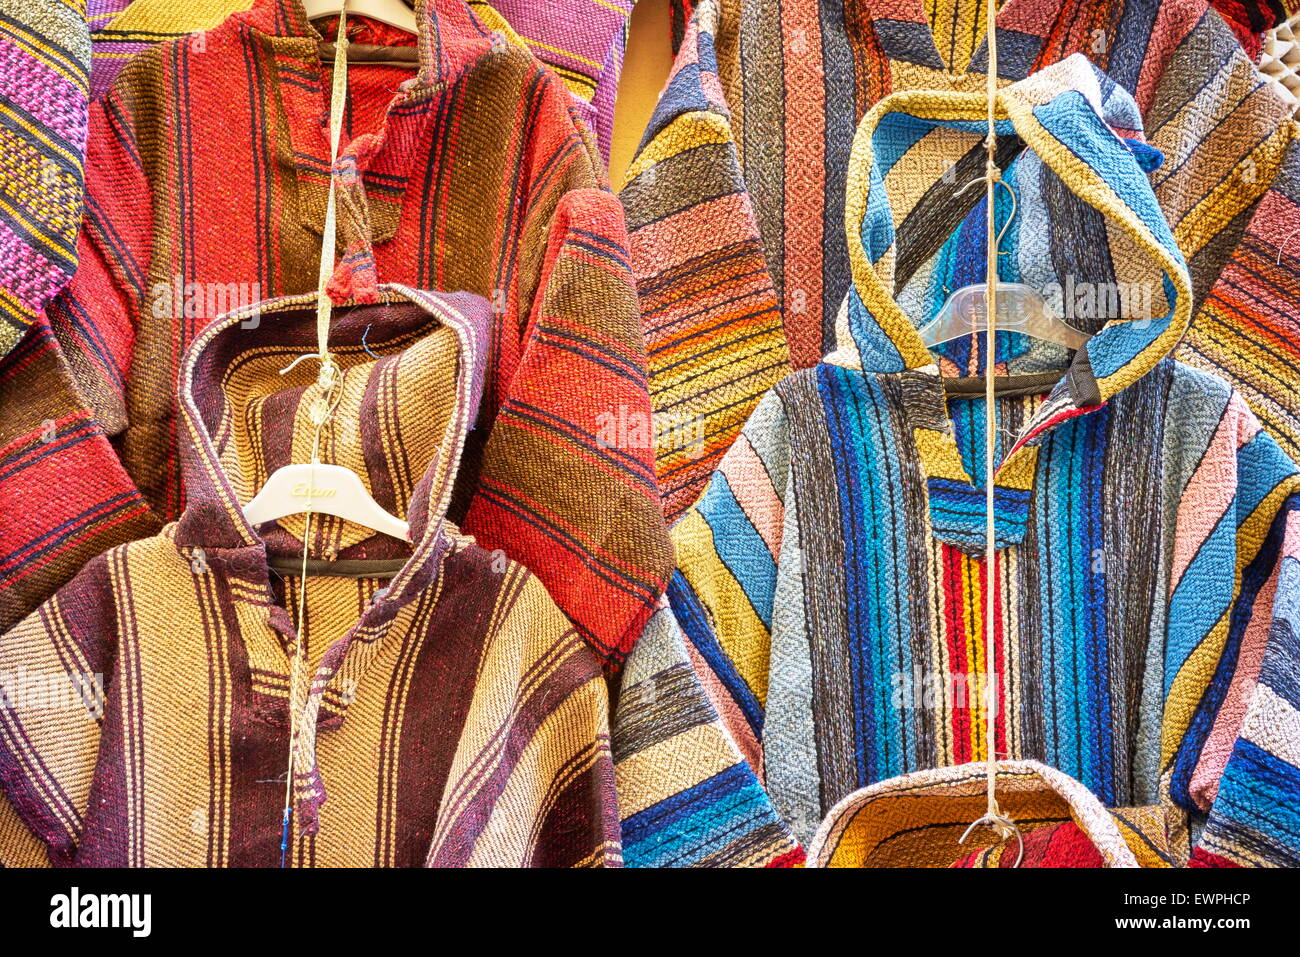 Boutique de vêtements. Djellabas de laine, robe traditionnelle marocaine berbère. Maroc Banque D'Images